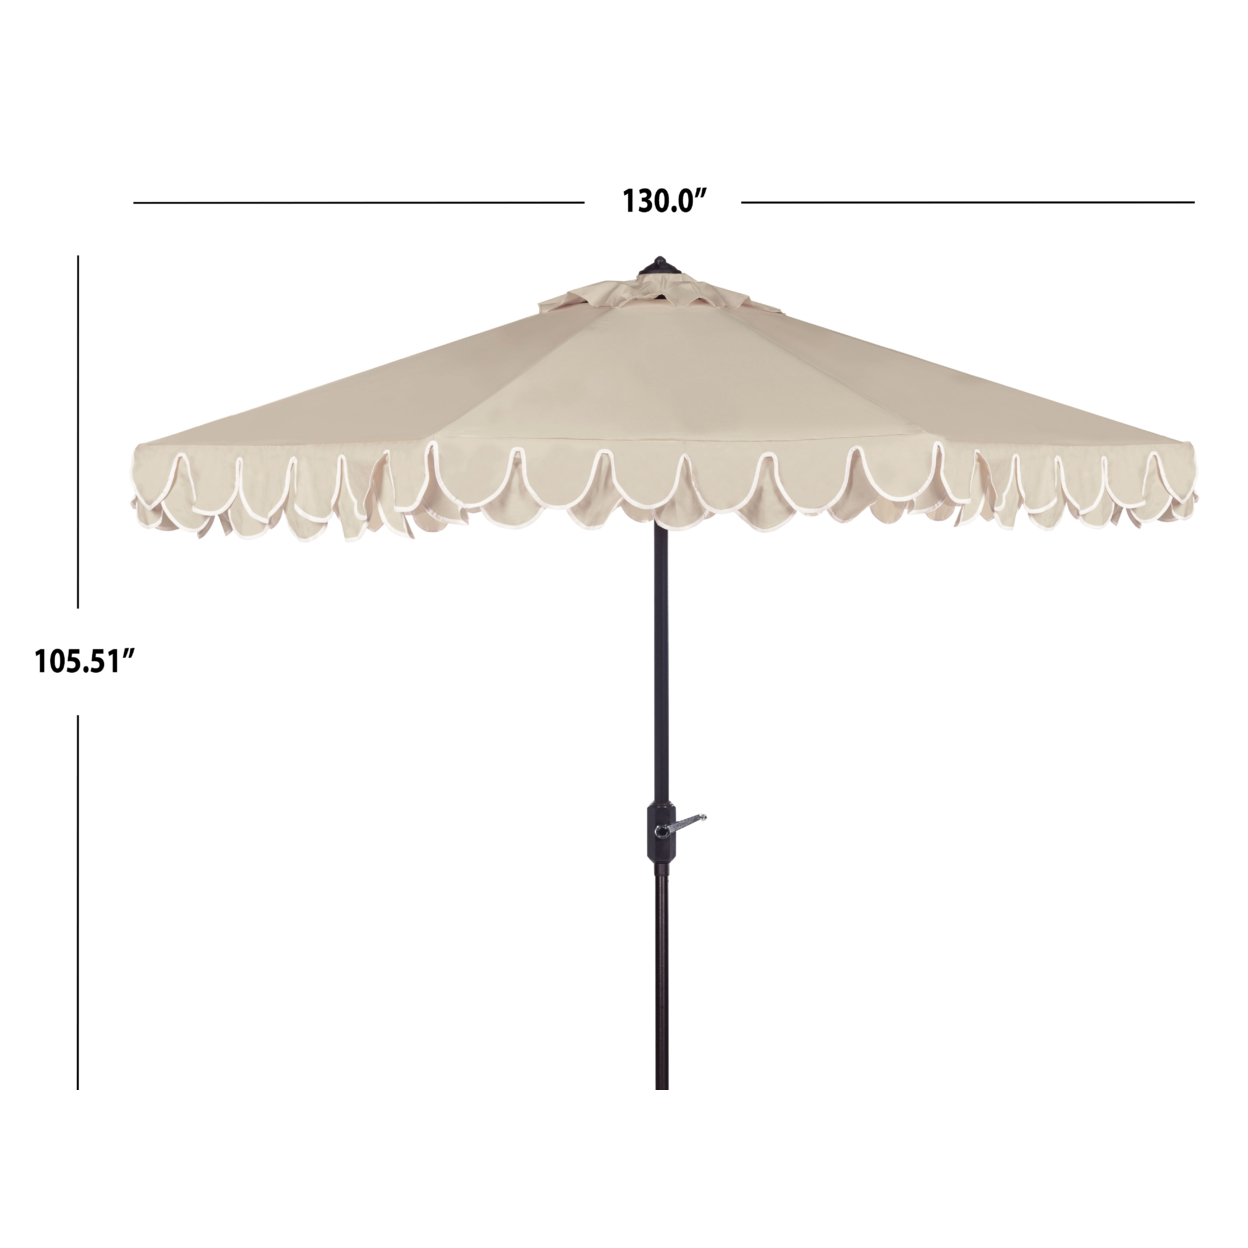 SAFAVIEH Outdoor Collection Elegant Valance 11-Foot Round Umbrella Beige/White